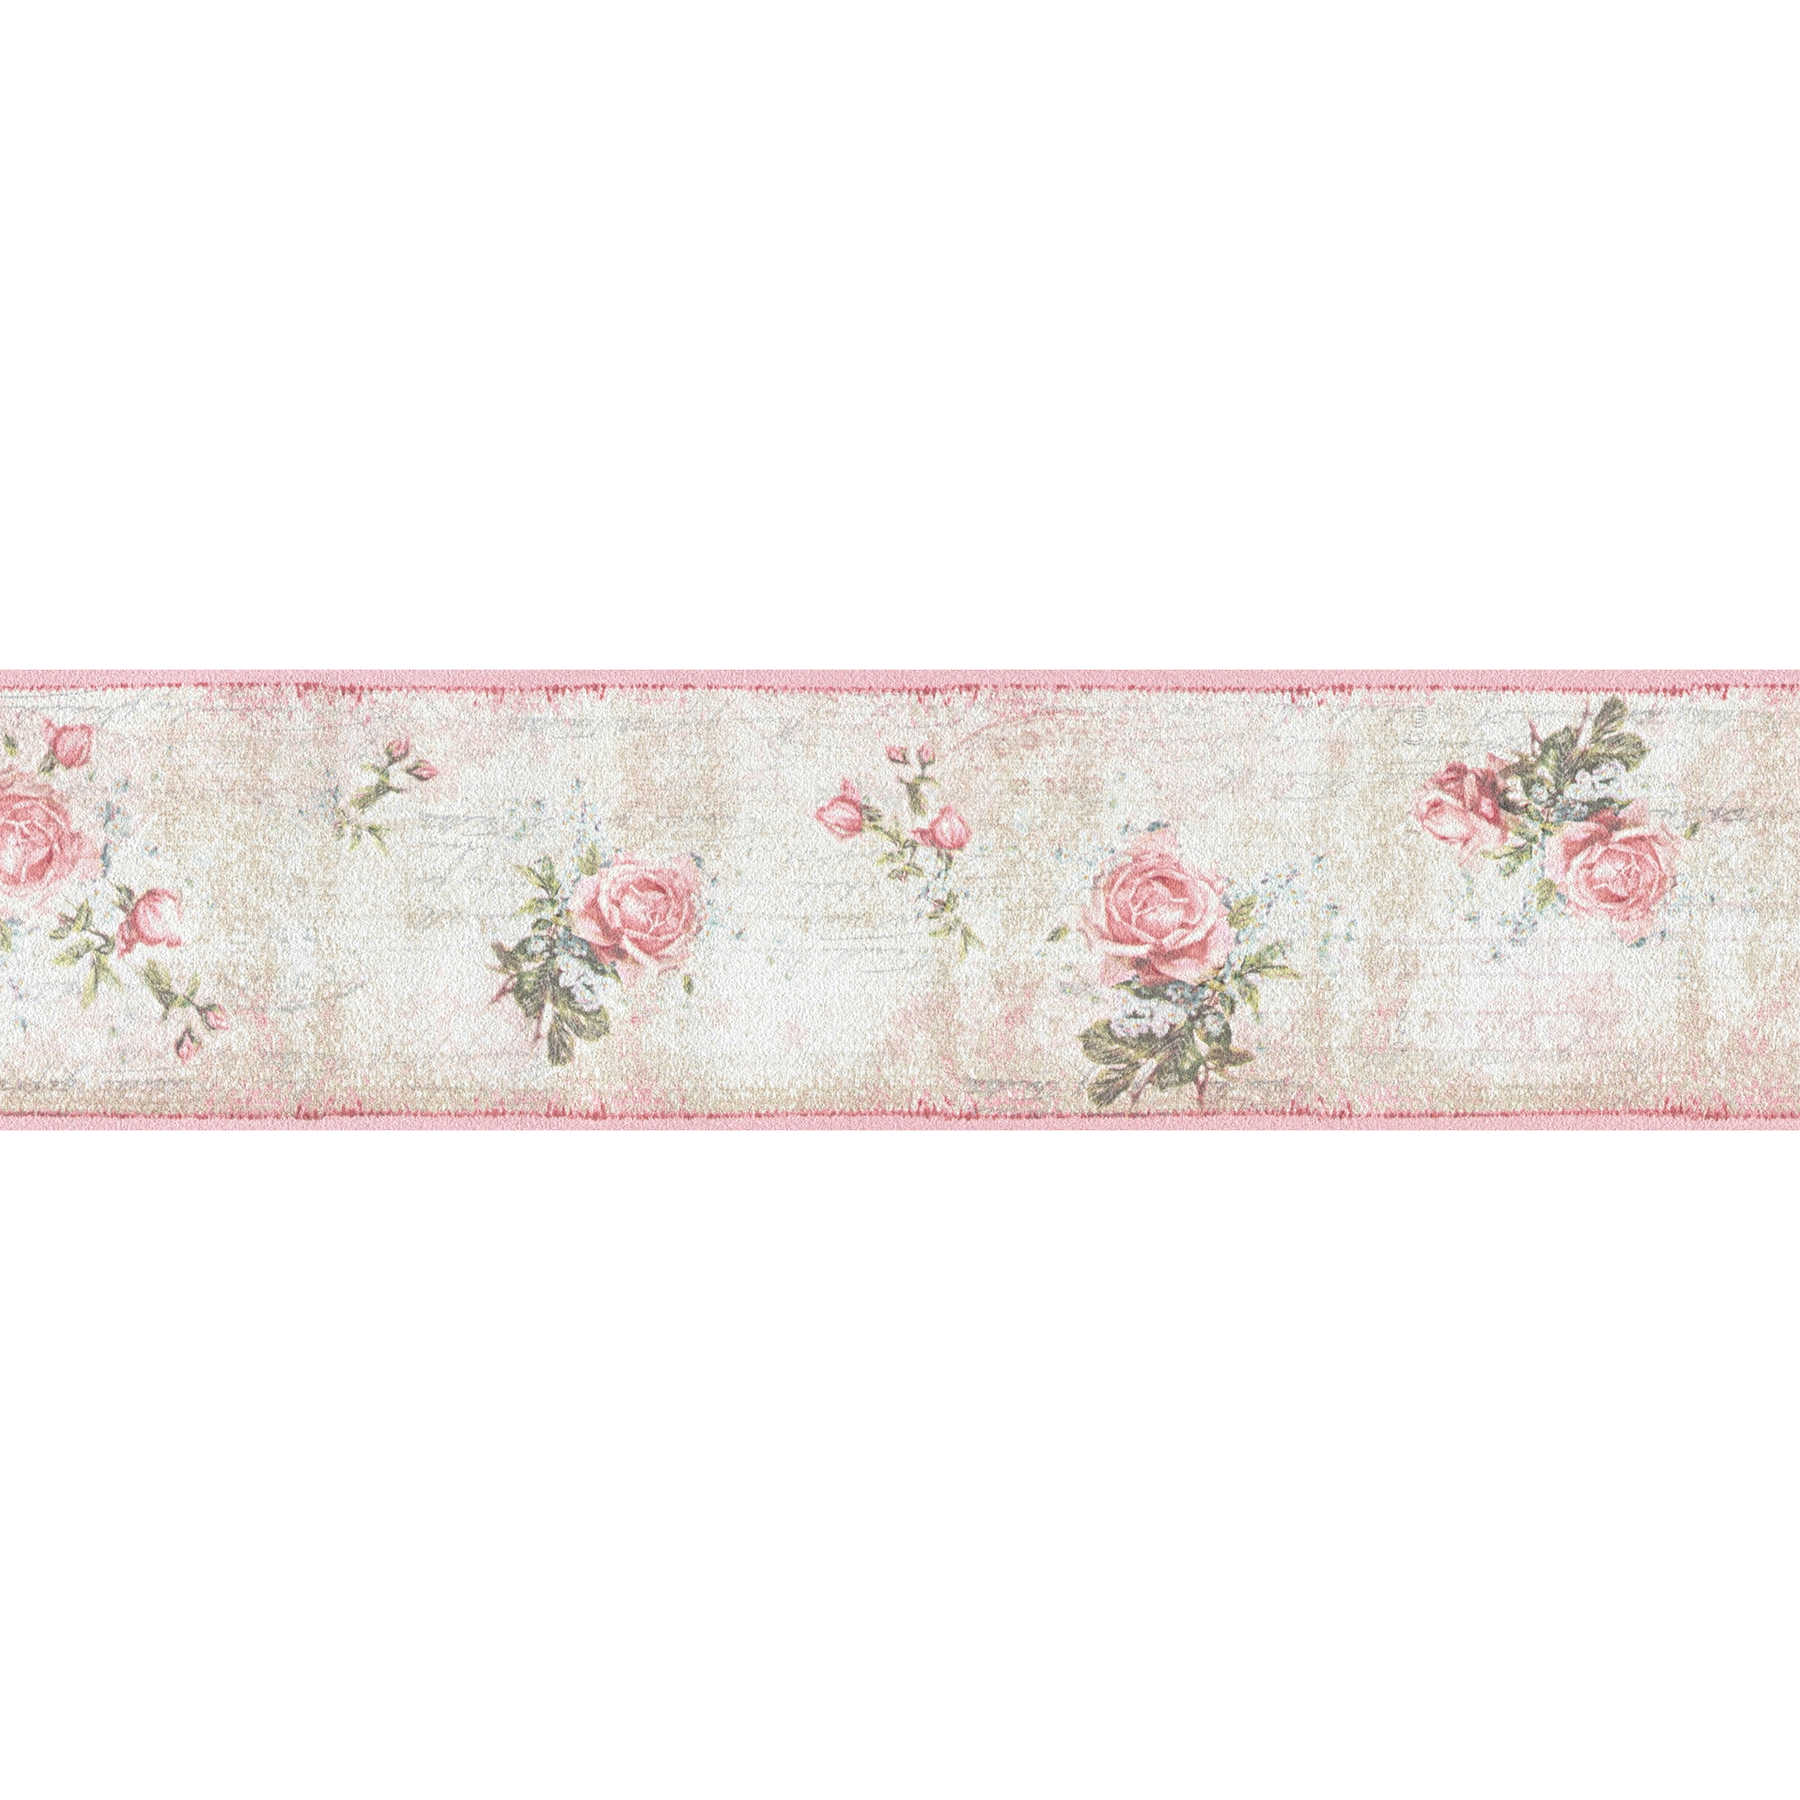         Vintage style roses wallpaper border - beige, pink
    